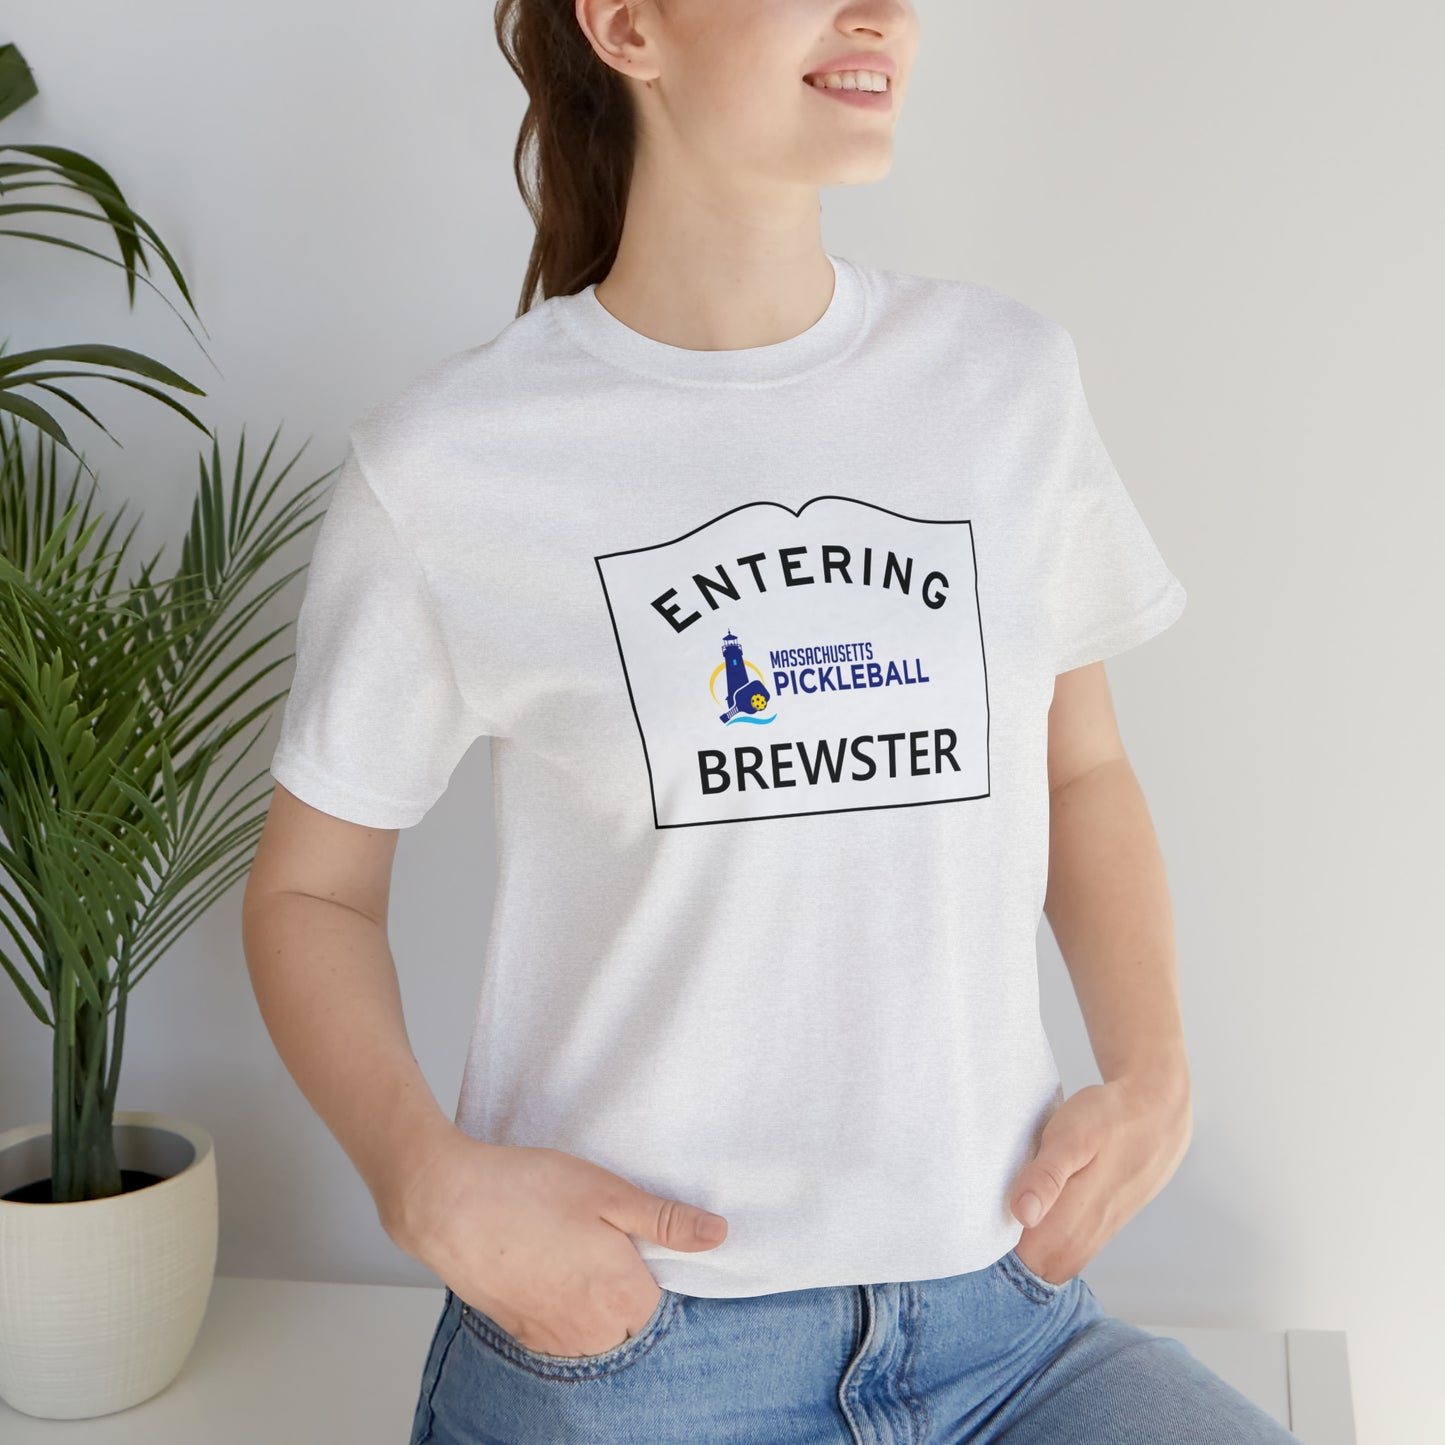 Brewster, Mass Pickleball Short Sleeve T-Shirt